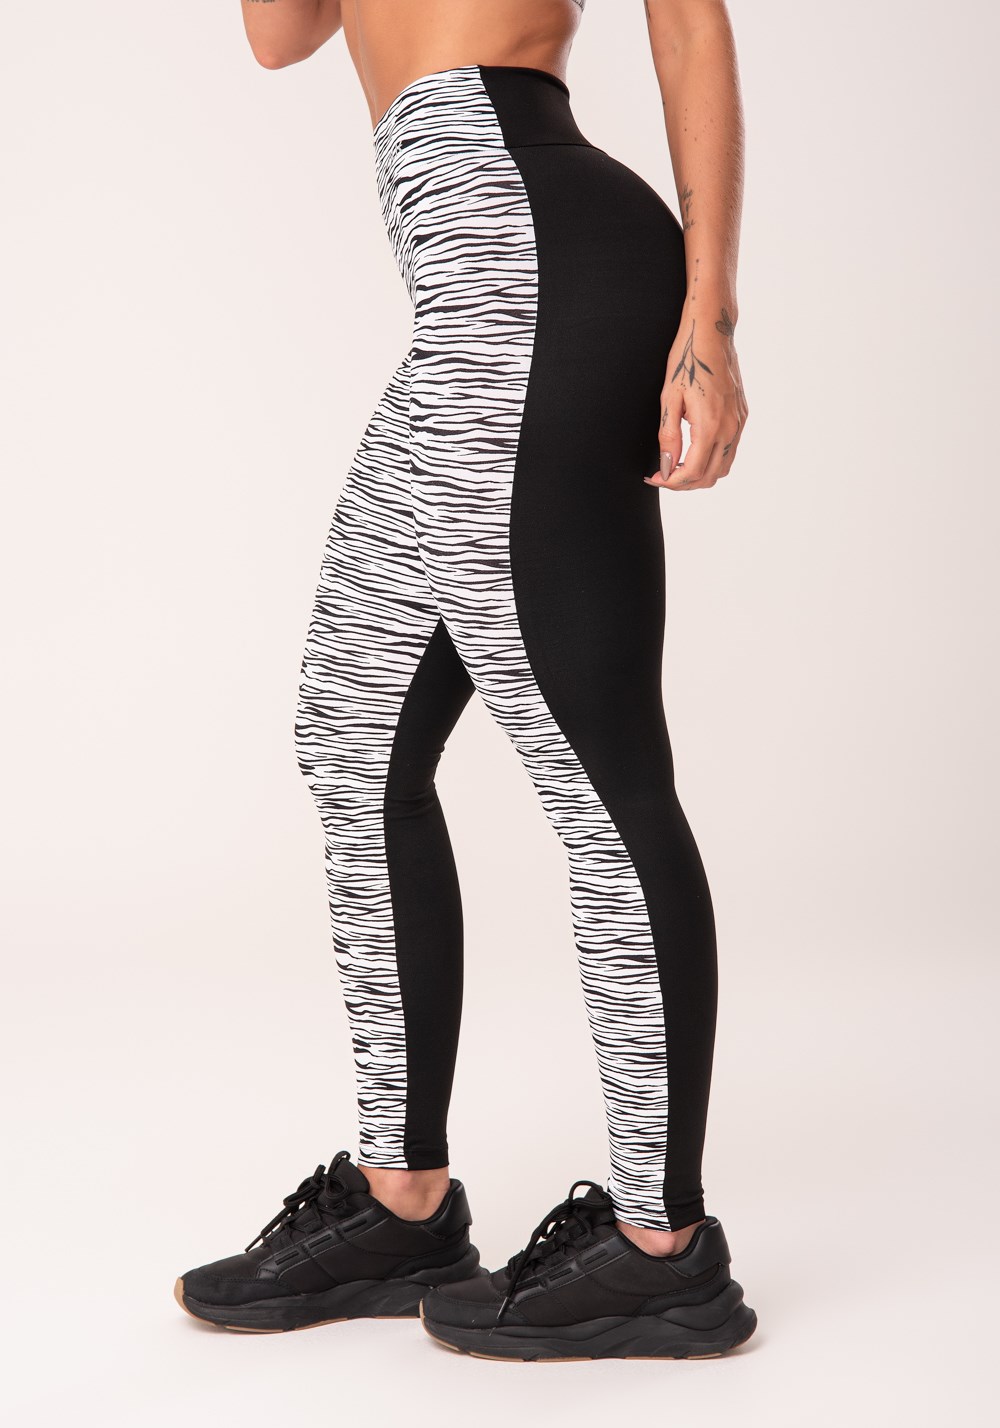 Calça legging wild preta com estampa de zebra